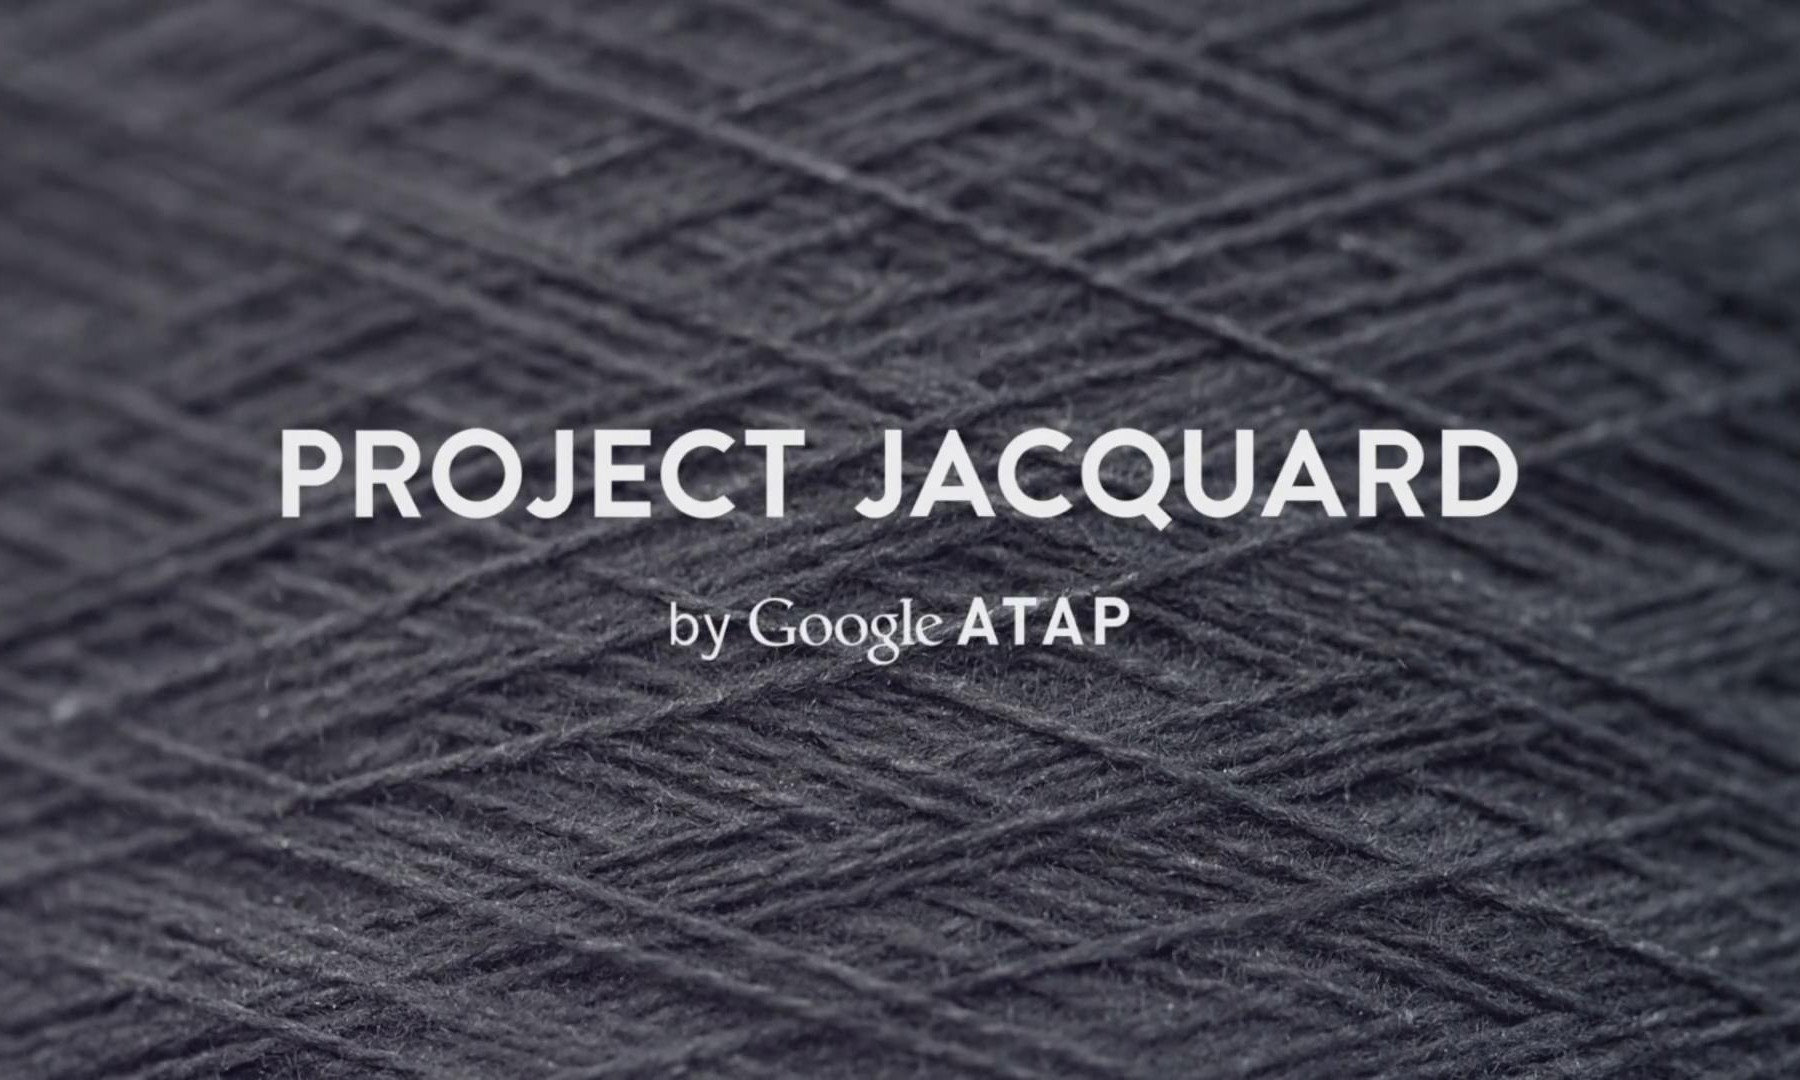 衣着革命，Google ATAP 实验室带来 “Project Jacquard” 触控技术